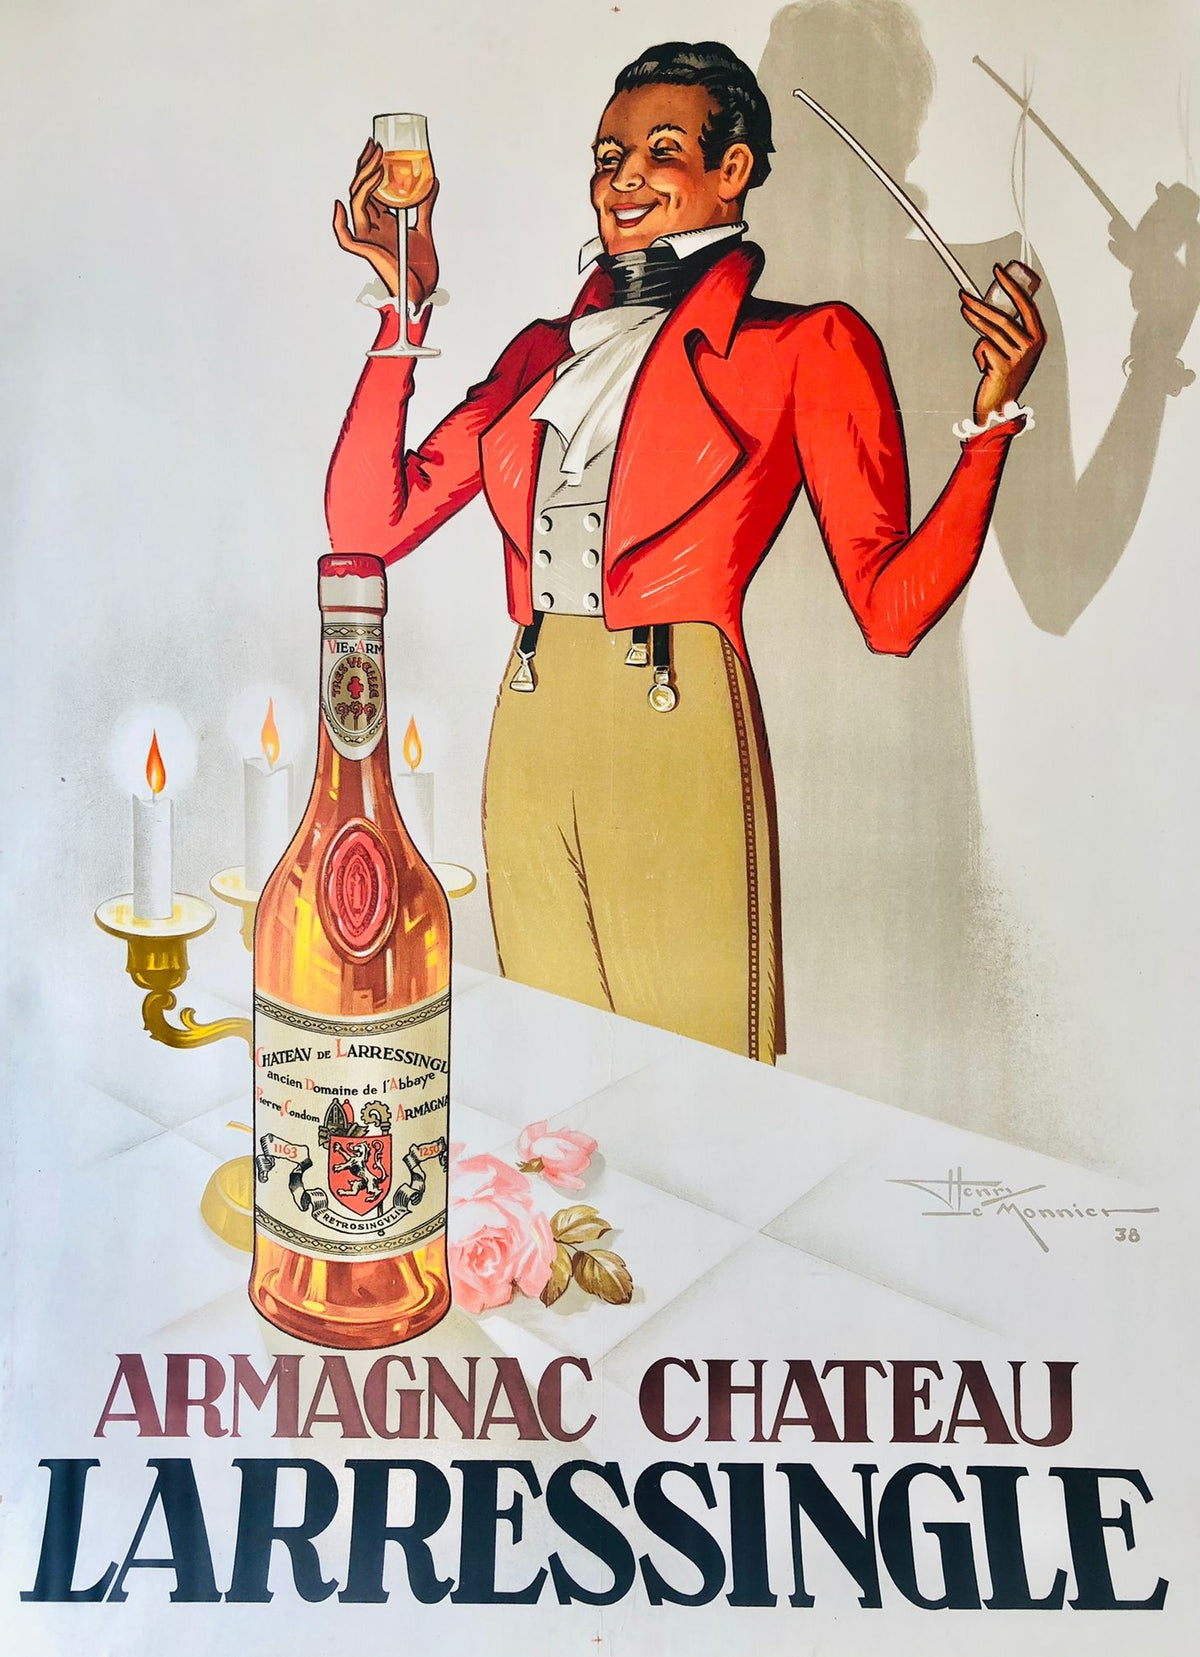 Armagnac Chateau Larressingle by Monnie